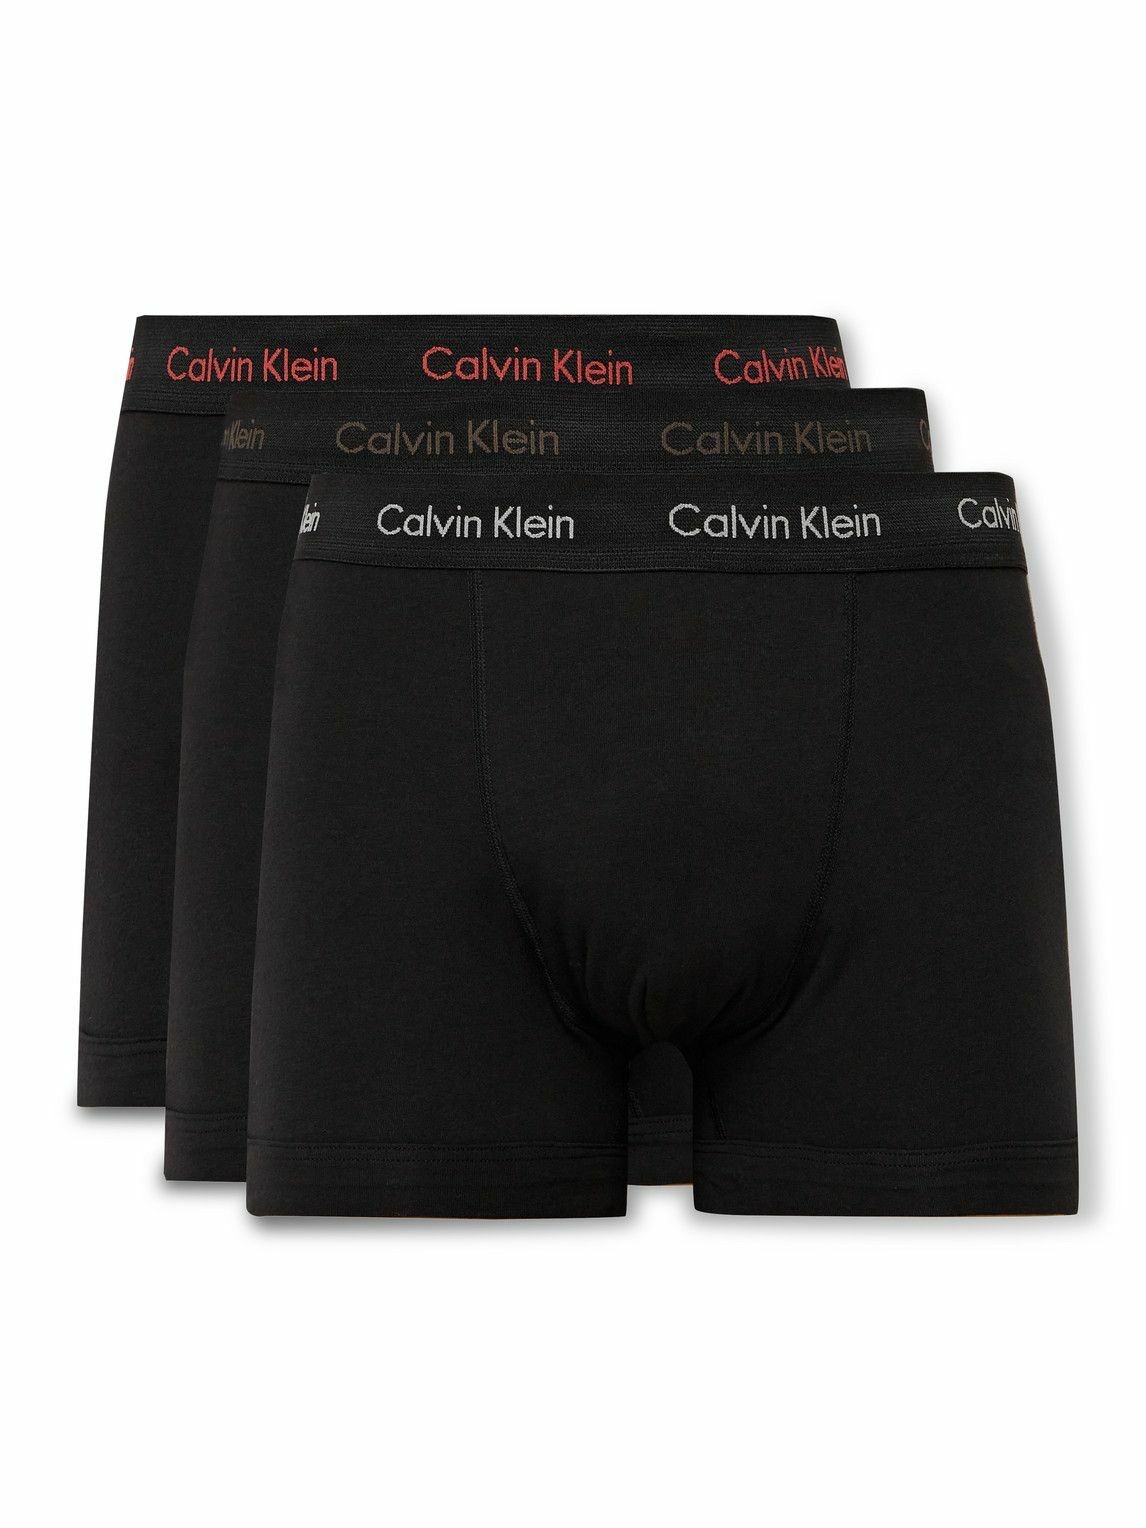 Calvin Klein Underwear Modern Cotton Stretch Boxer Brief 3 Pack Black ...